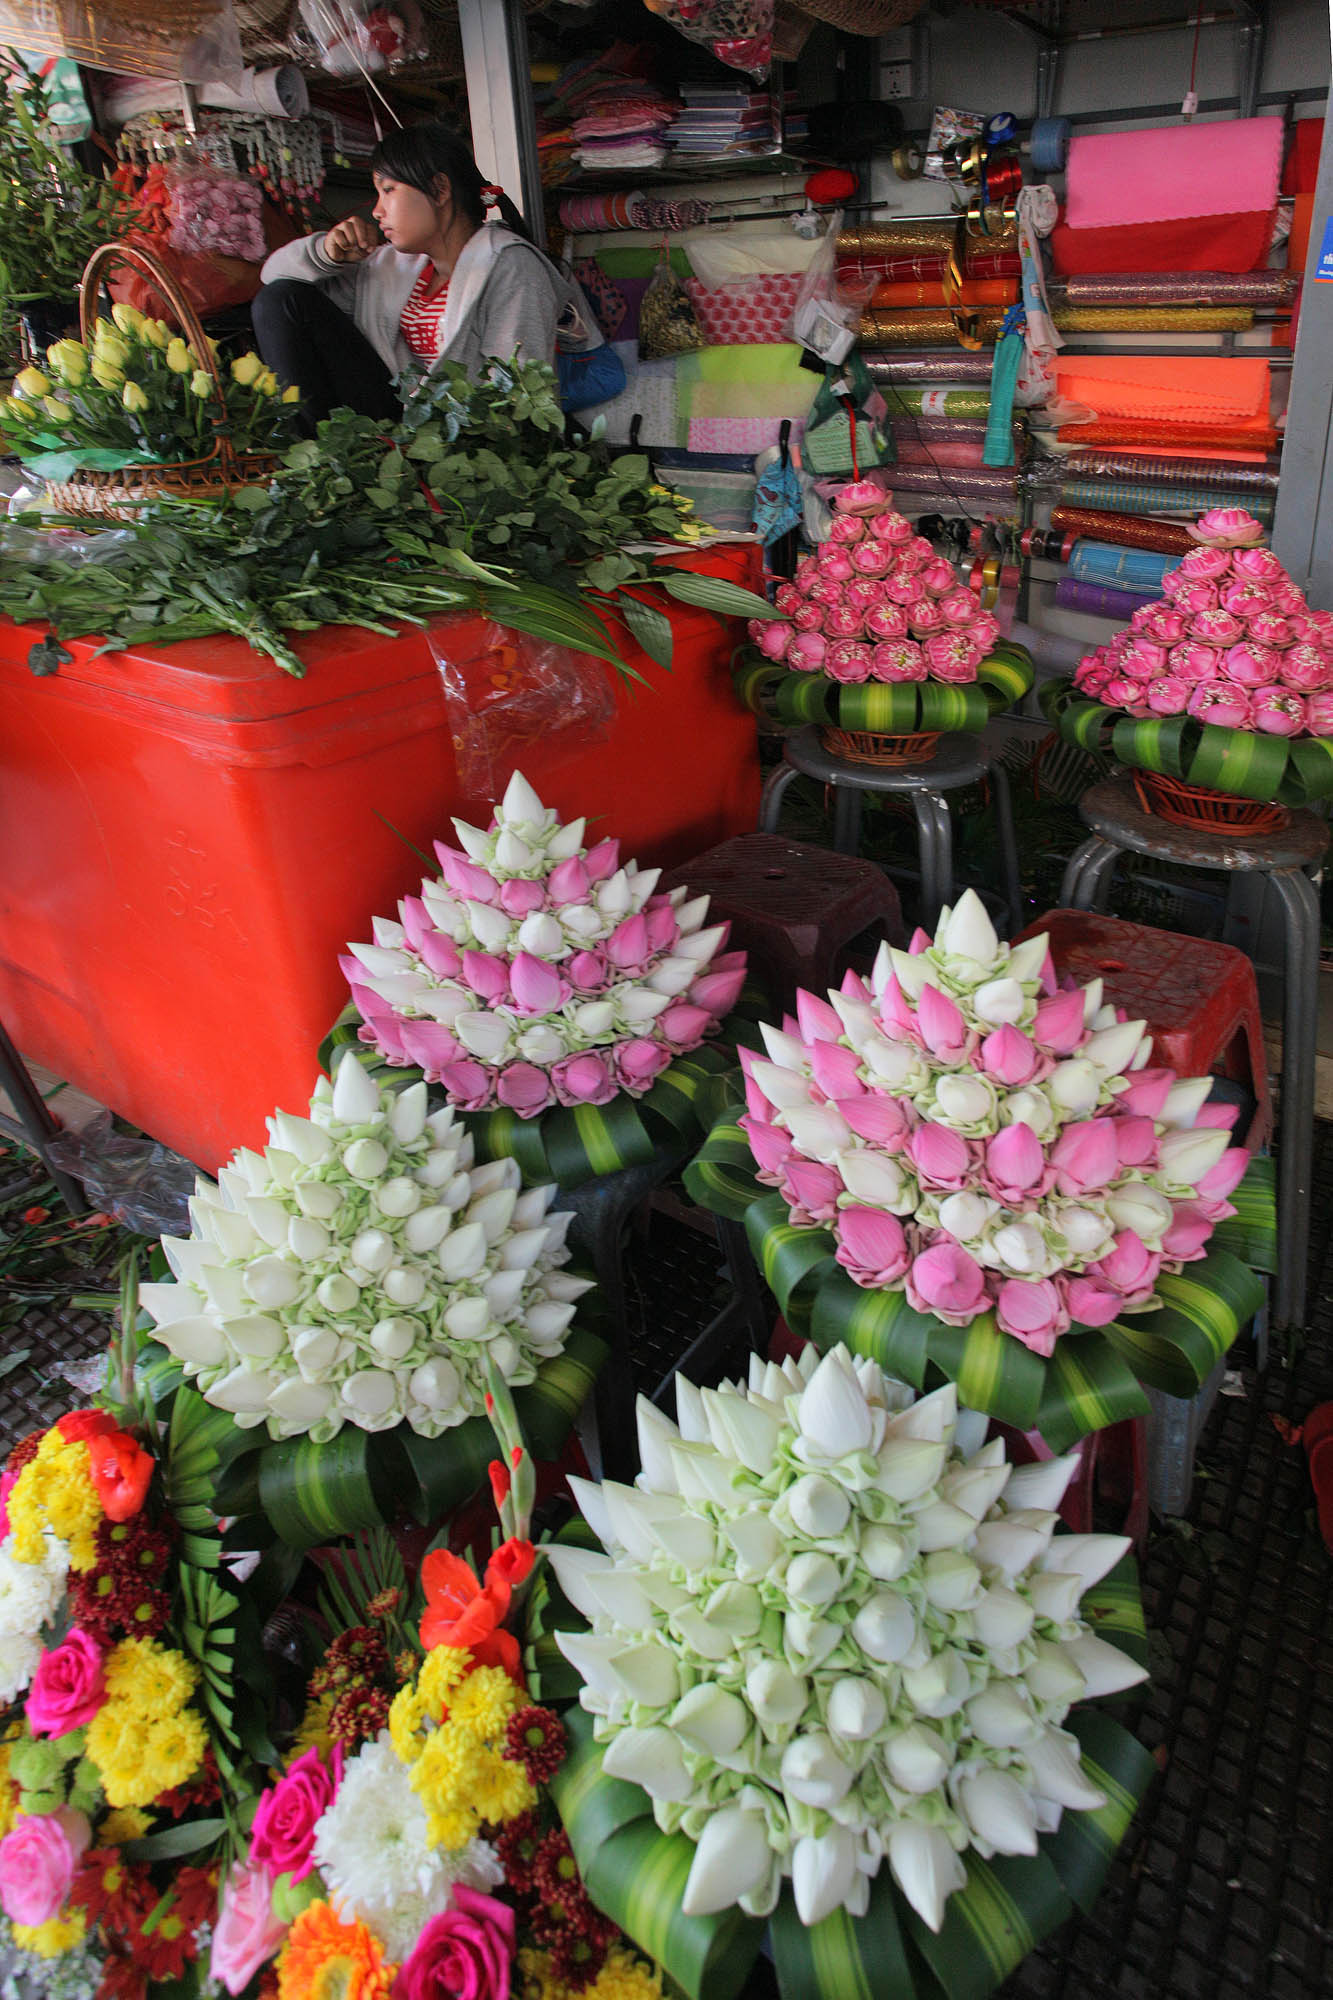 bill-hocker-flower-vendor-centra-market-phnom-penh-cambodia-2010